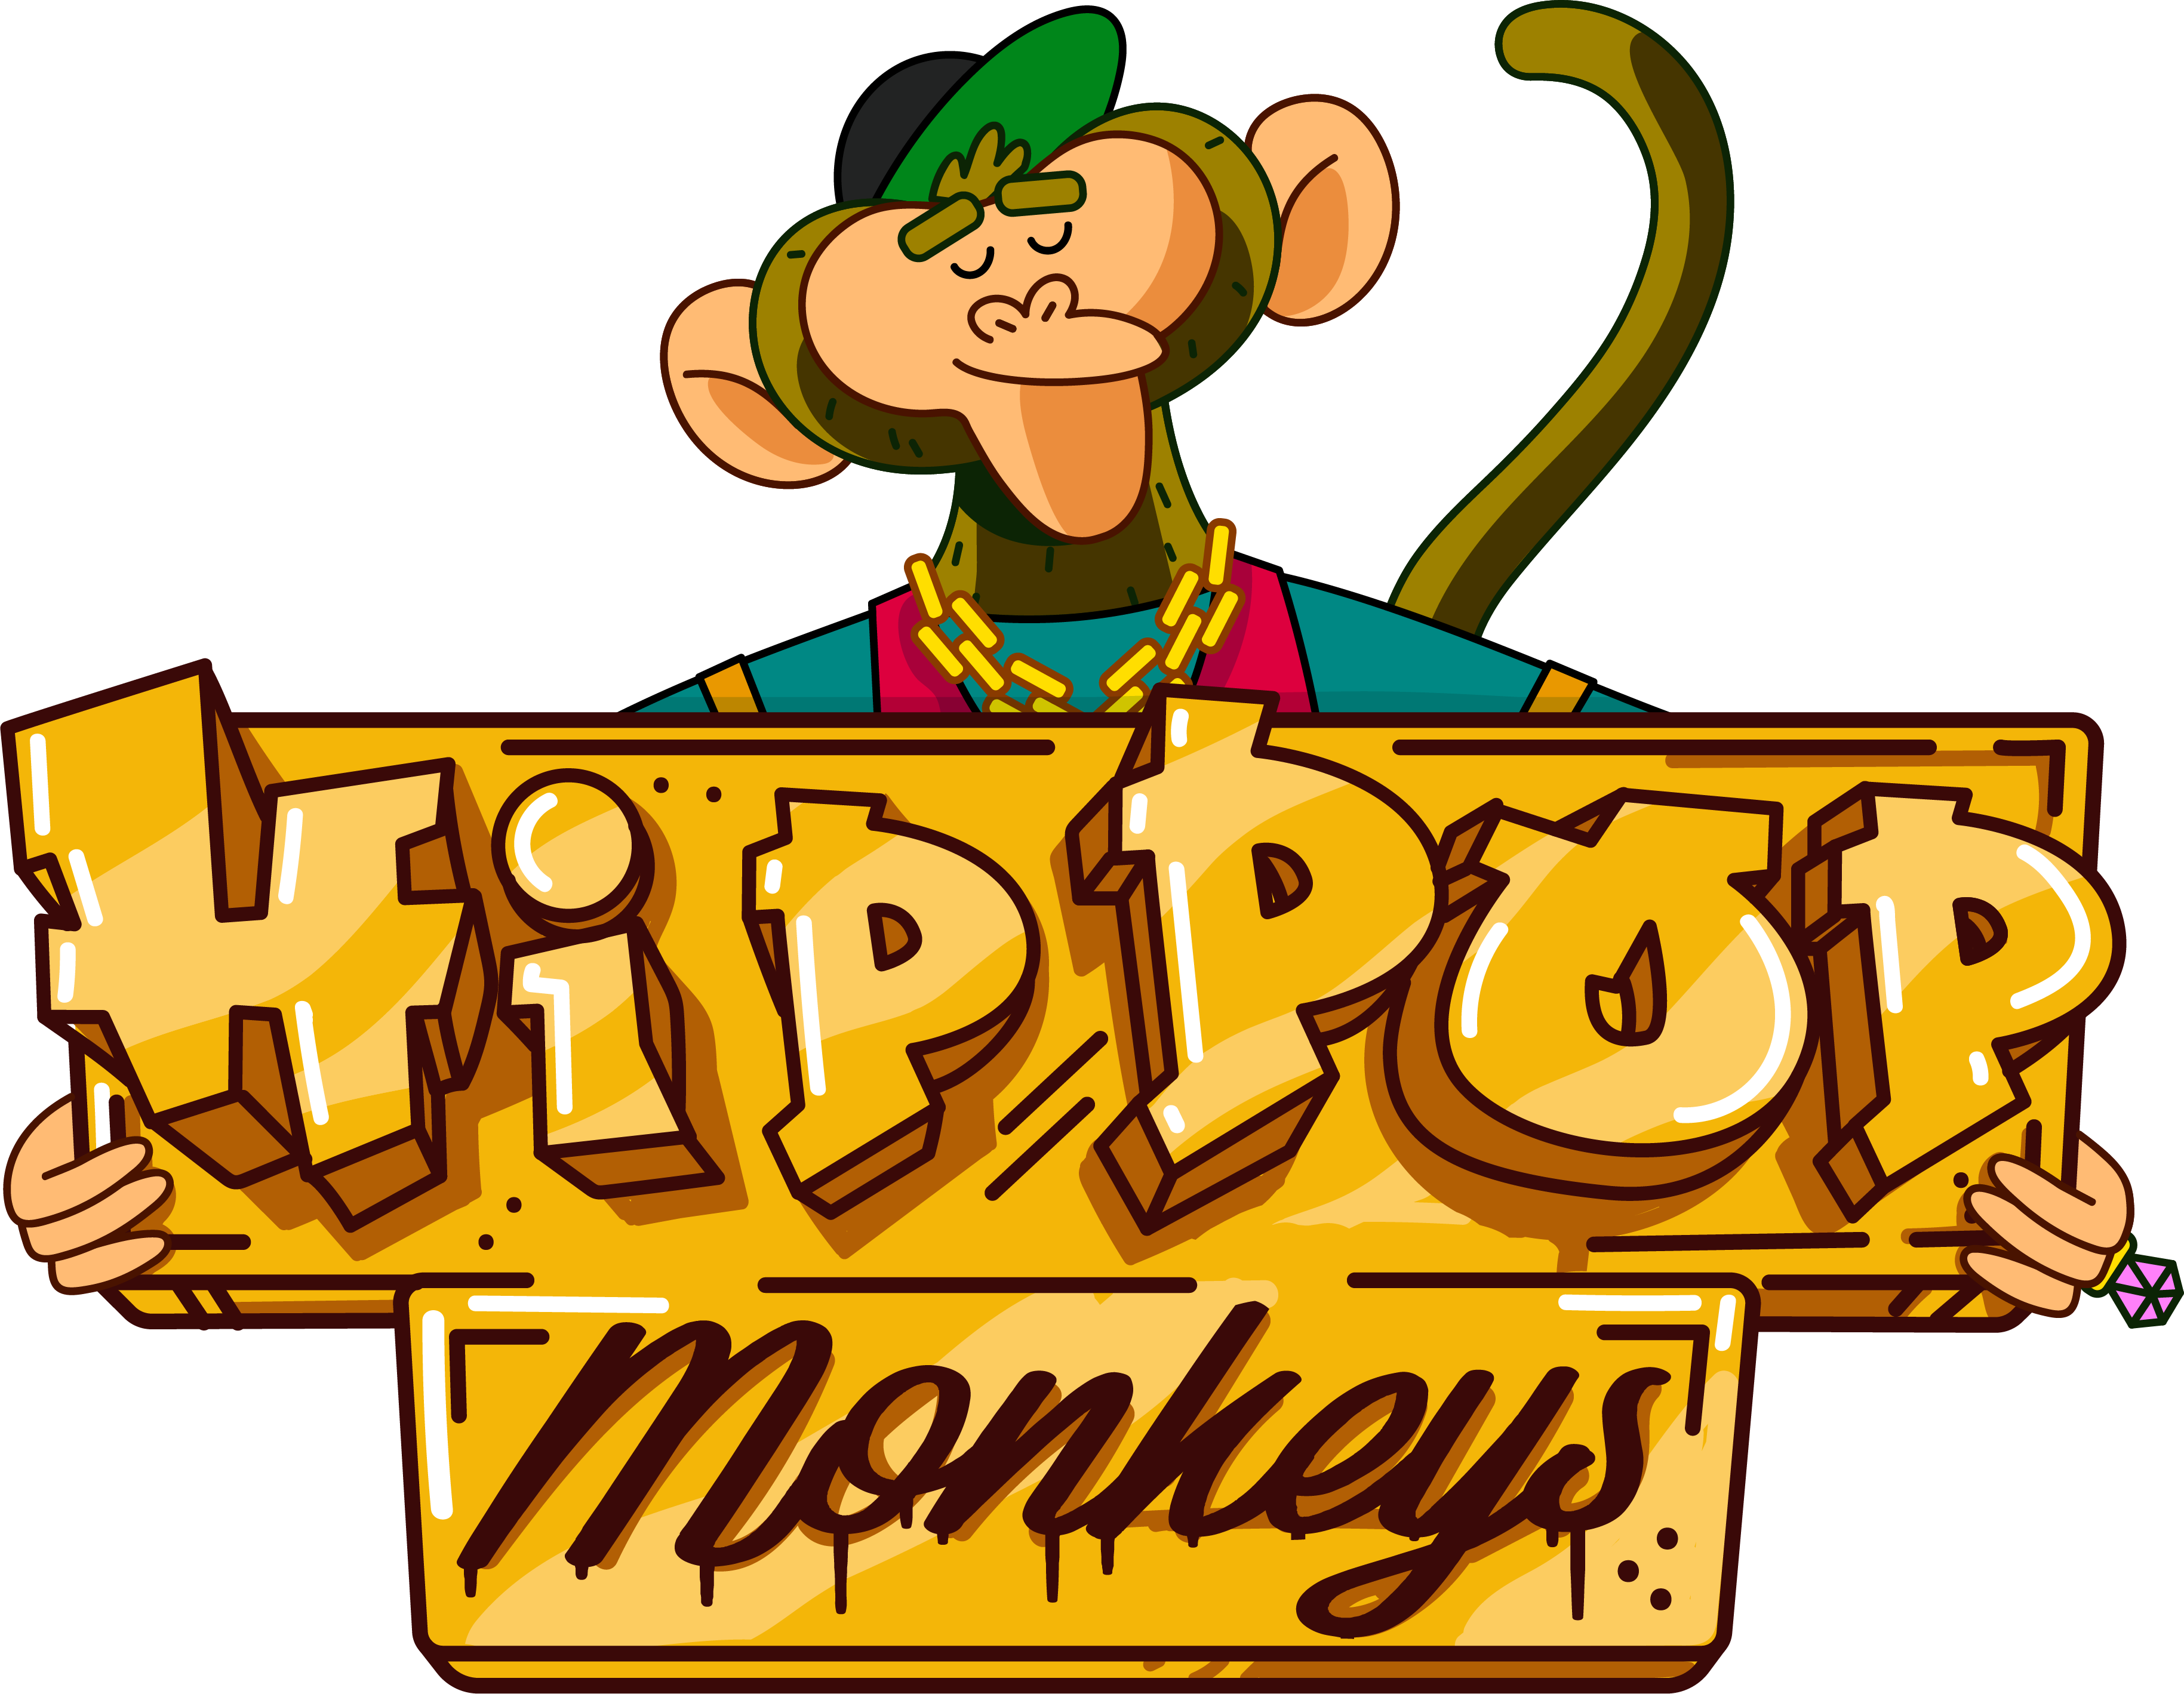 Logo de la gamme de eliquide pour le vapotage Hip Pop Monkeys de la marque française Alfaliquid et fabriqués par la société Gaiatrend.